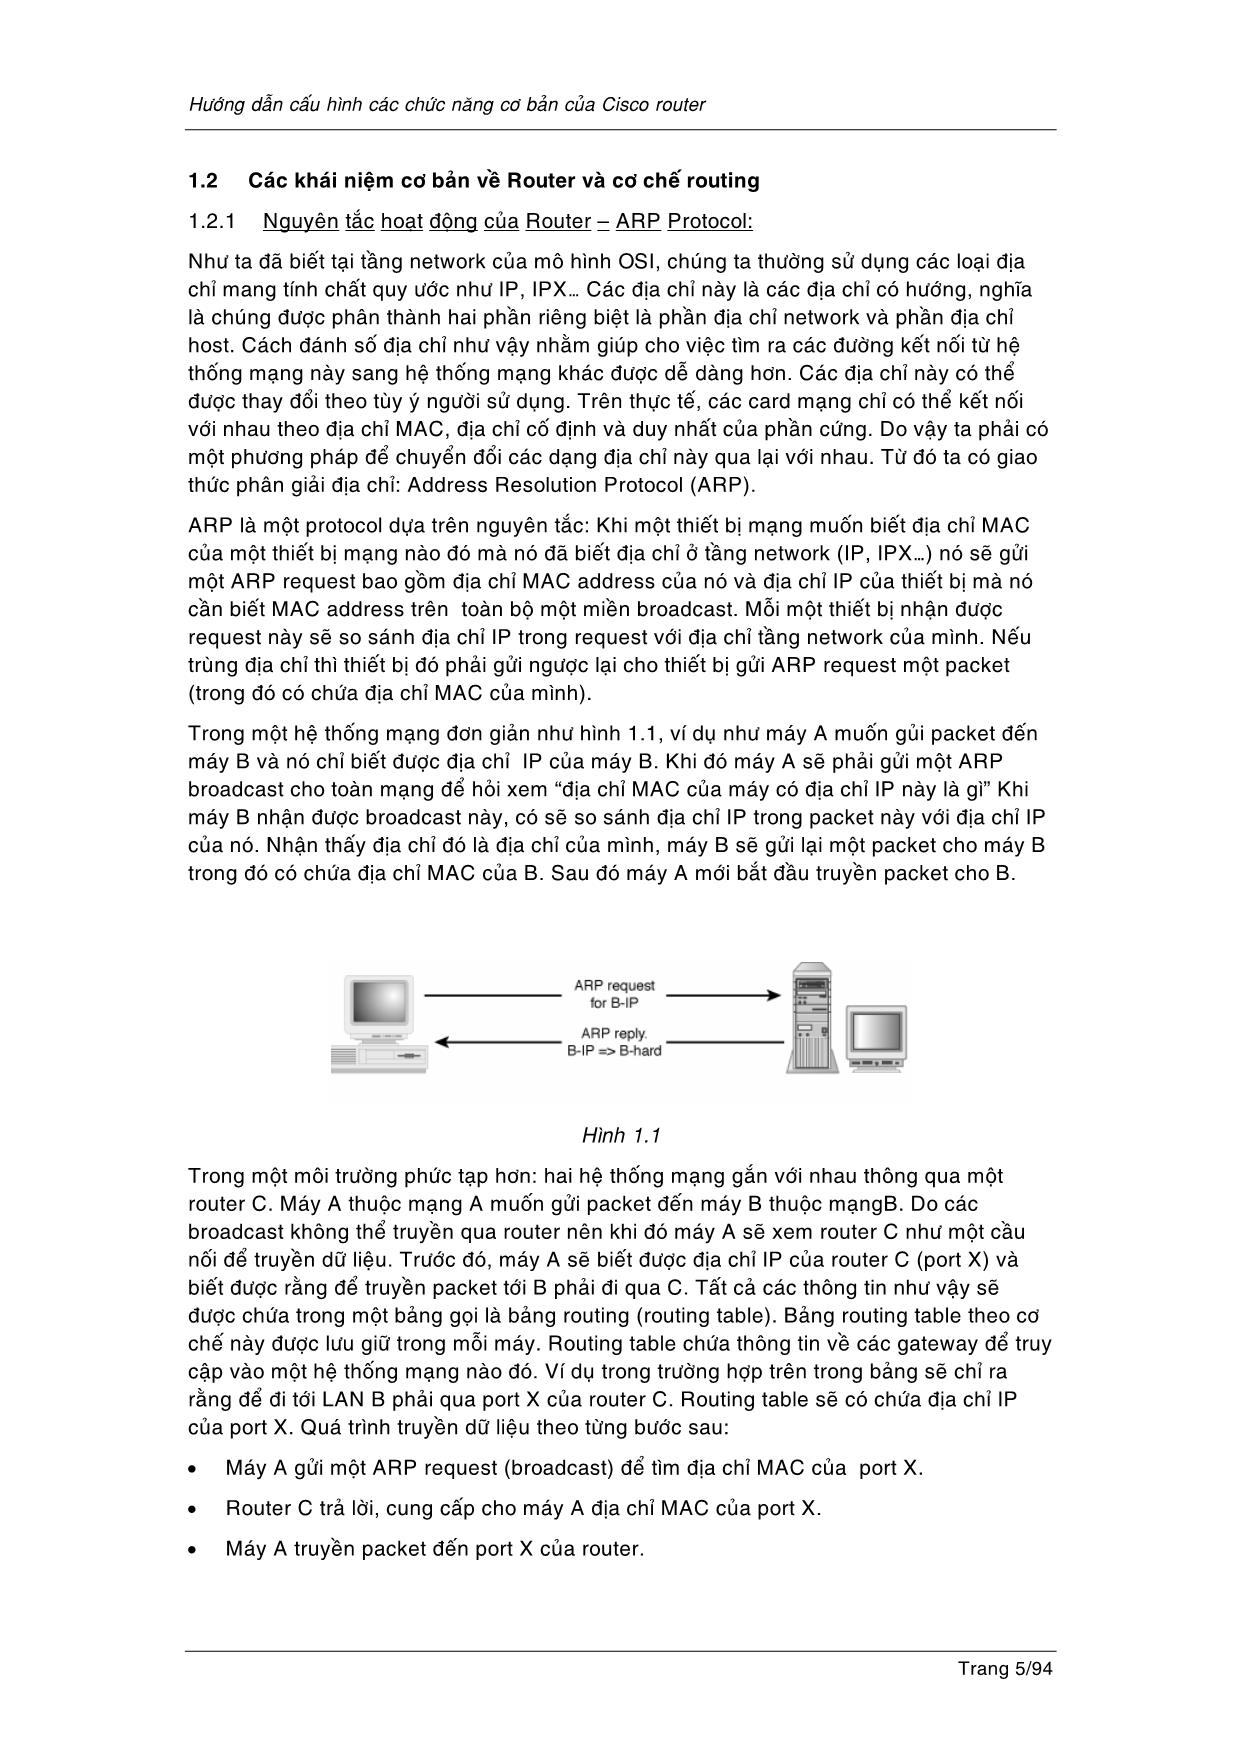 Hướng dẫn cấu hình các tính năng cơ bản cho cisco router trang 5